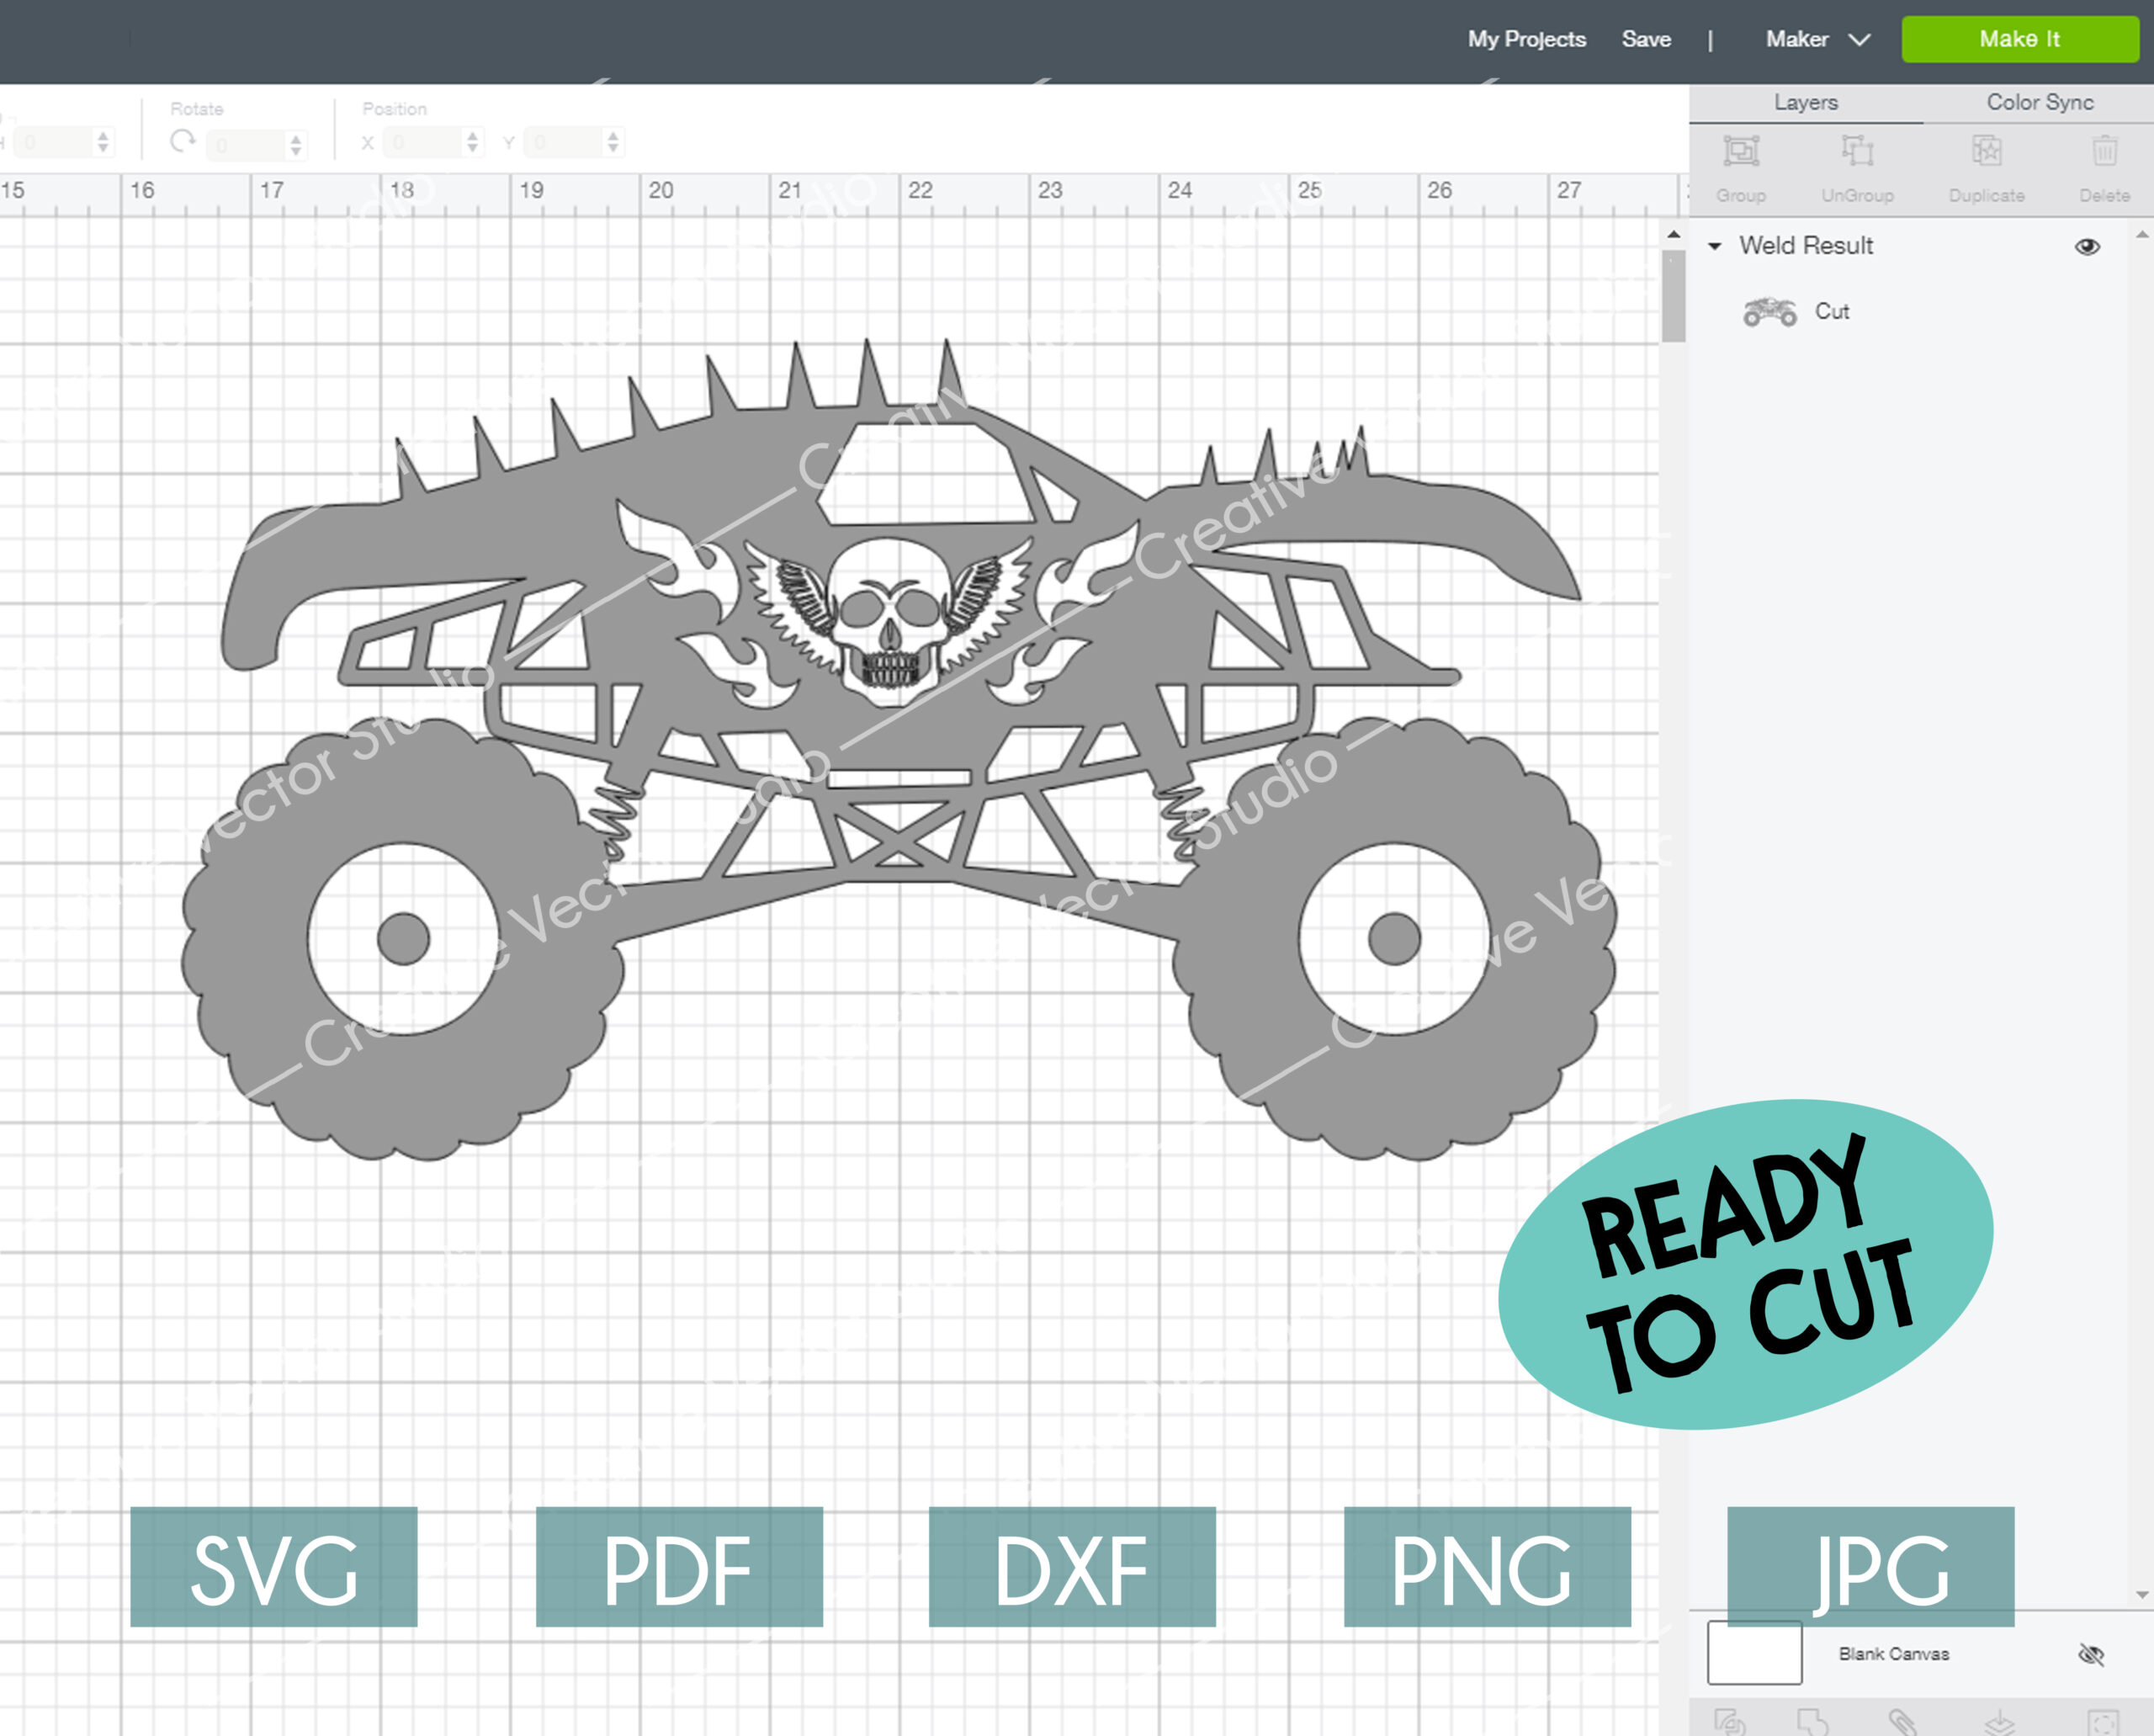 Download Monster Truck SVG, Monster Truck Silhouette, Monster Jam ...